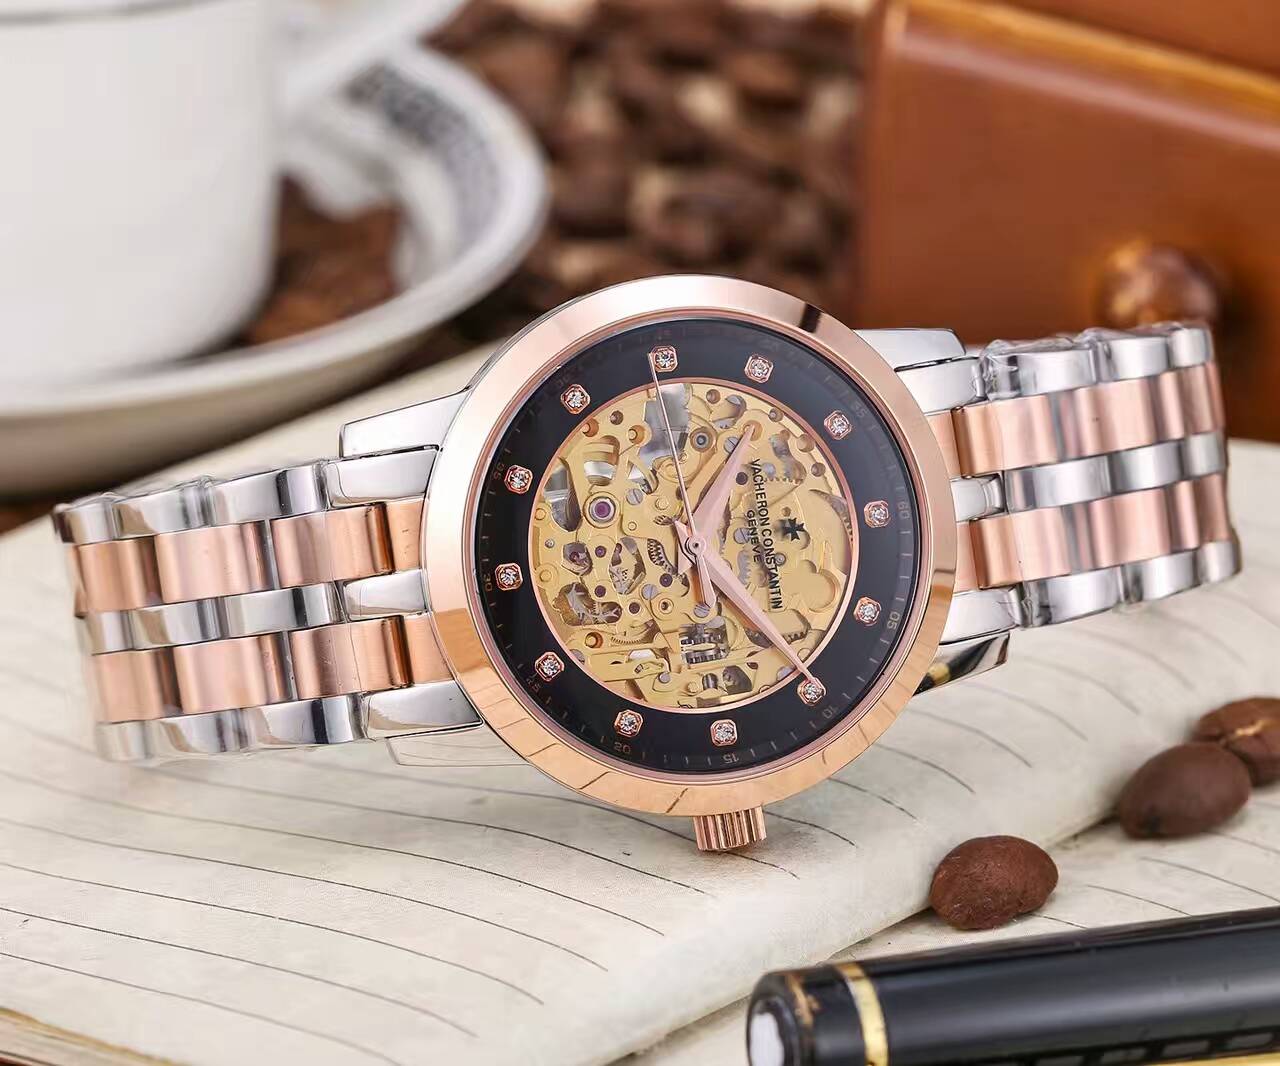 江詩丹頓 藍寶石水晶鏡面 頂級機械機芯 精鋼錶帶 尊貴不凡 風格經典 精品男士腕錶 -rhid-117044